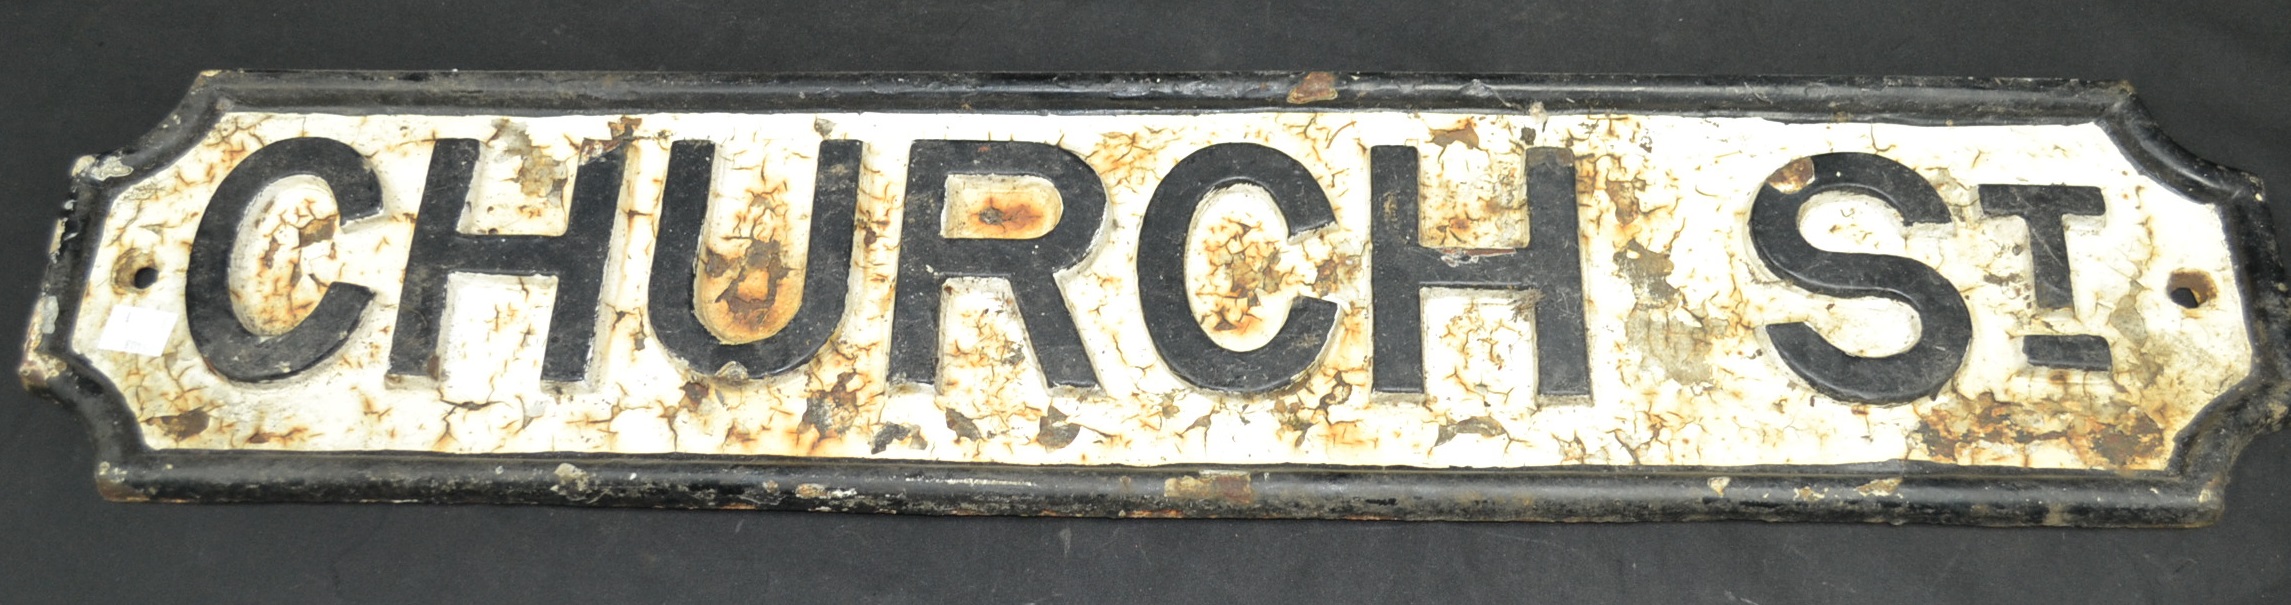 A cast iron street sign - Church Street